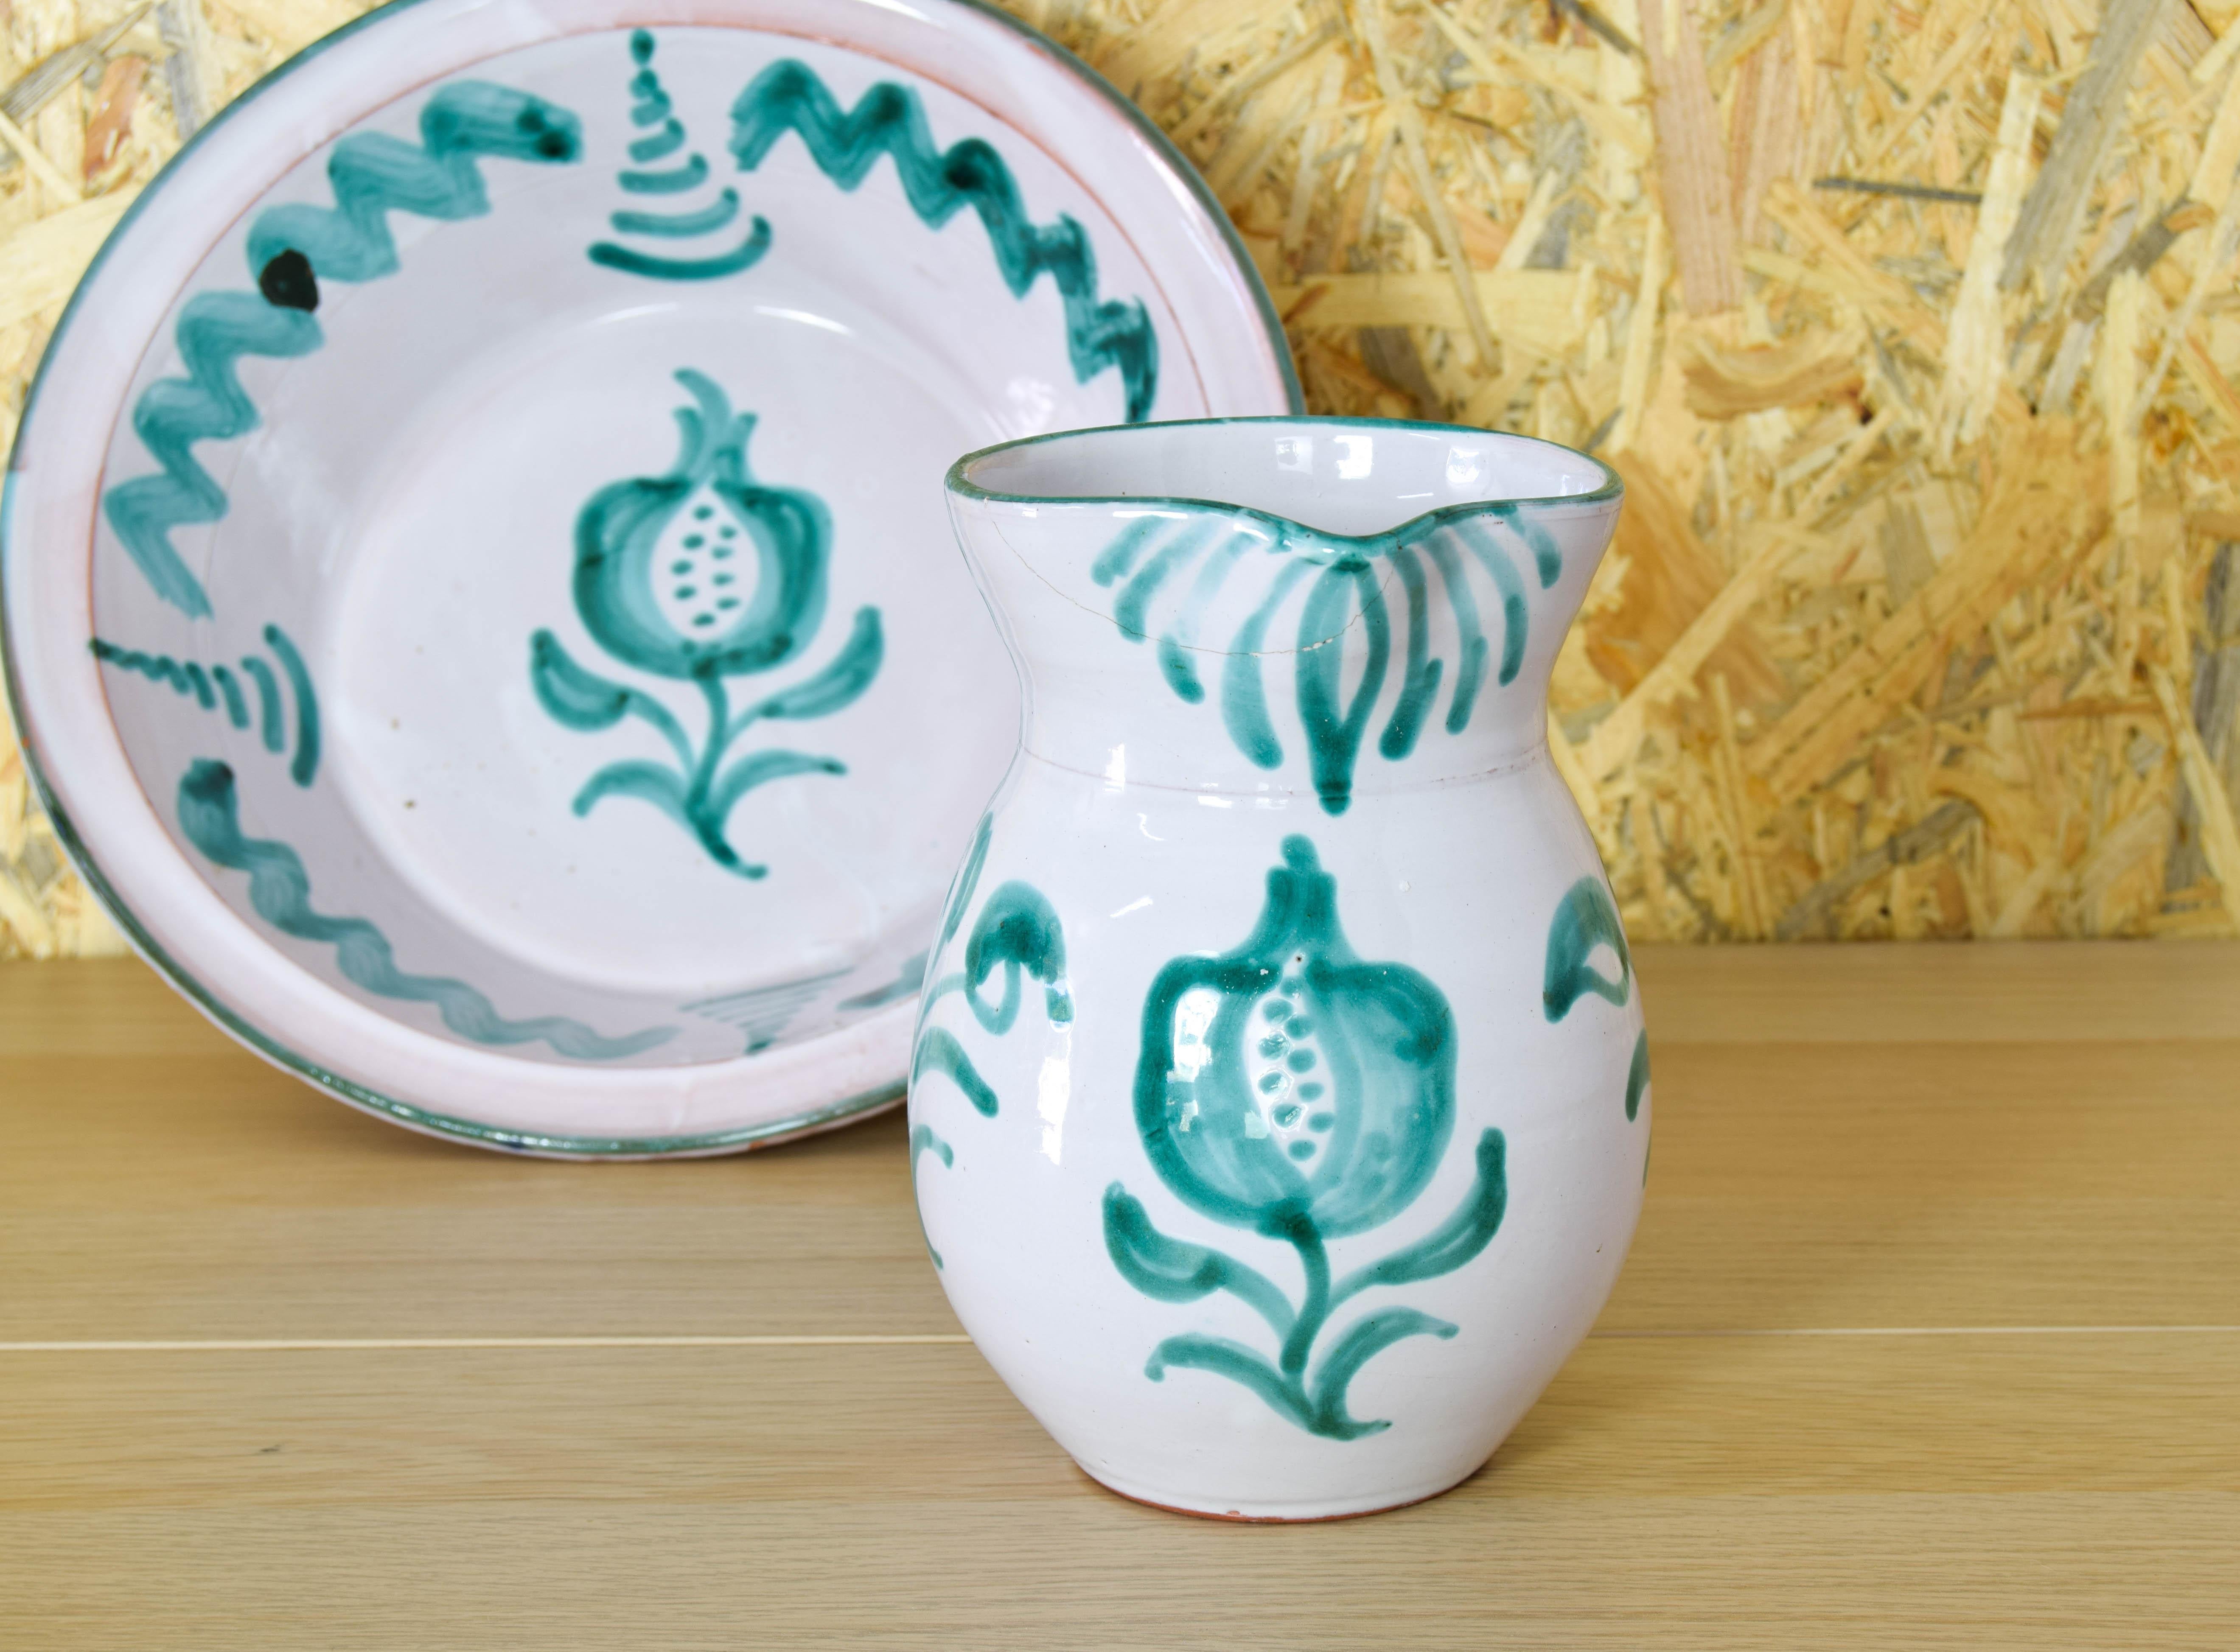 Fajalauza ceramic jug and Lebrillo bowl Spain 60s In Fair Condition For Sale In Escalona, Toledo